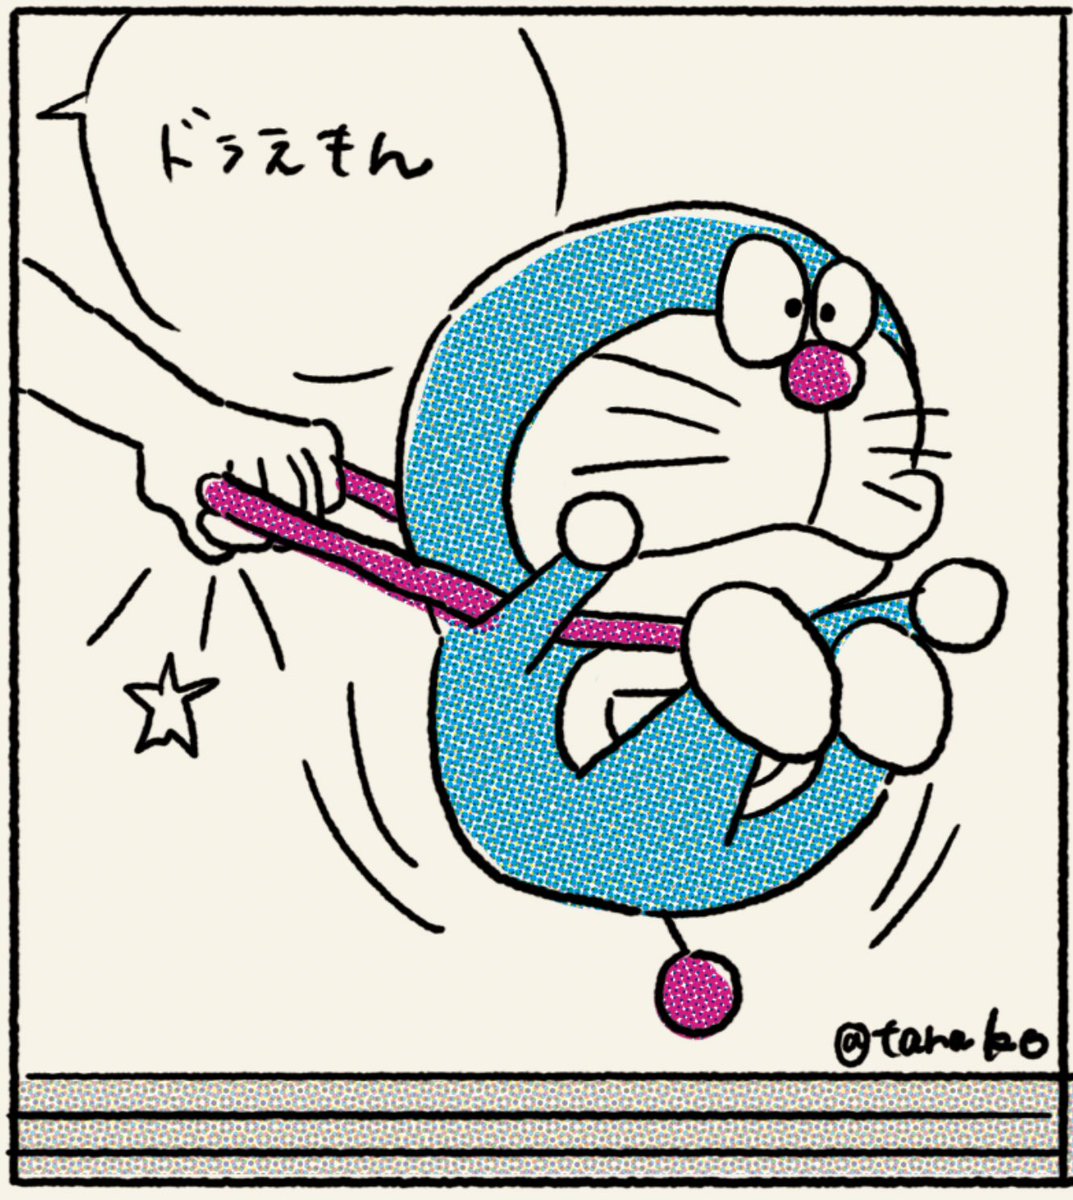 たらこ 今日は2月22日猫の日とのこと 猫を感じたドラさん描きました シリーズ1 ドラえもんズ ドラえもん 猫の日 首根っこ掴まれる Dorakyura1293 さんの投稿参考にしました